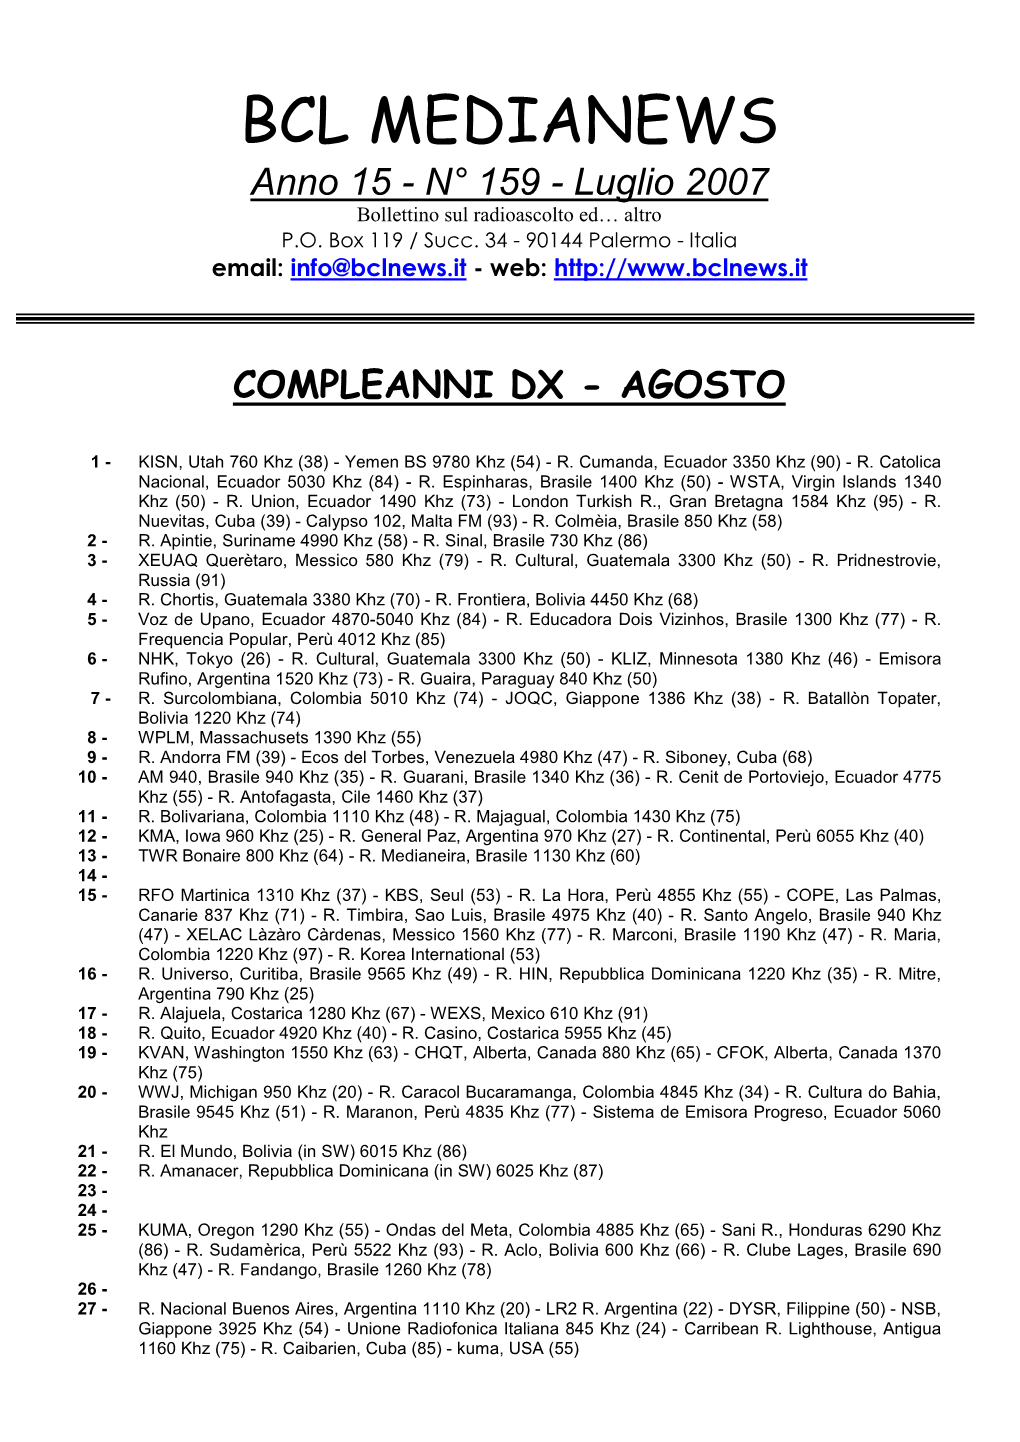 BCL MEDIANEWS Anno 15 - N° 159 - Luglio 2007 Bollettino Sul Radioascolto Ed… Altro P.O